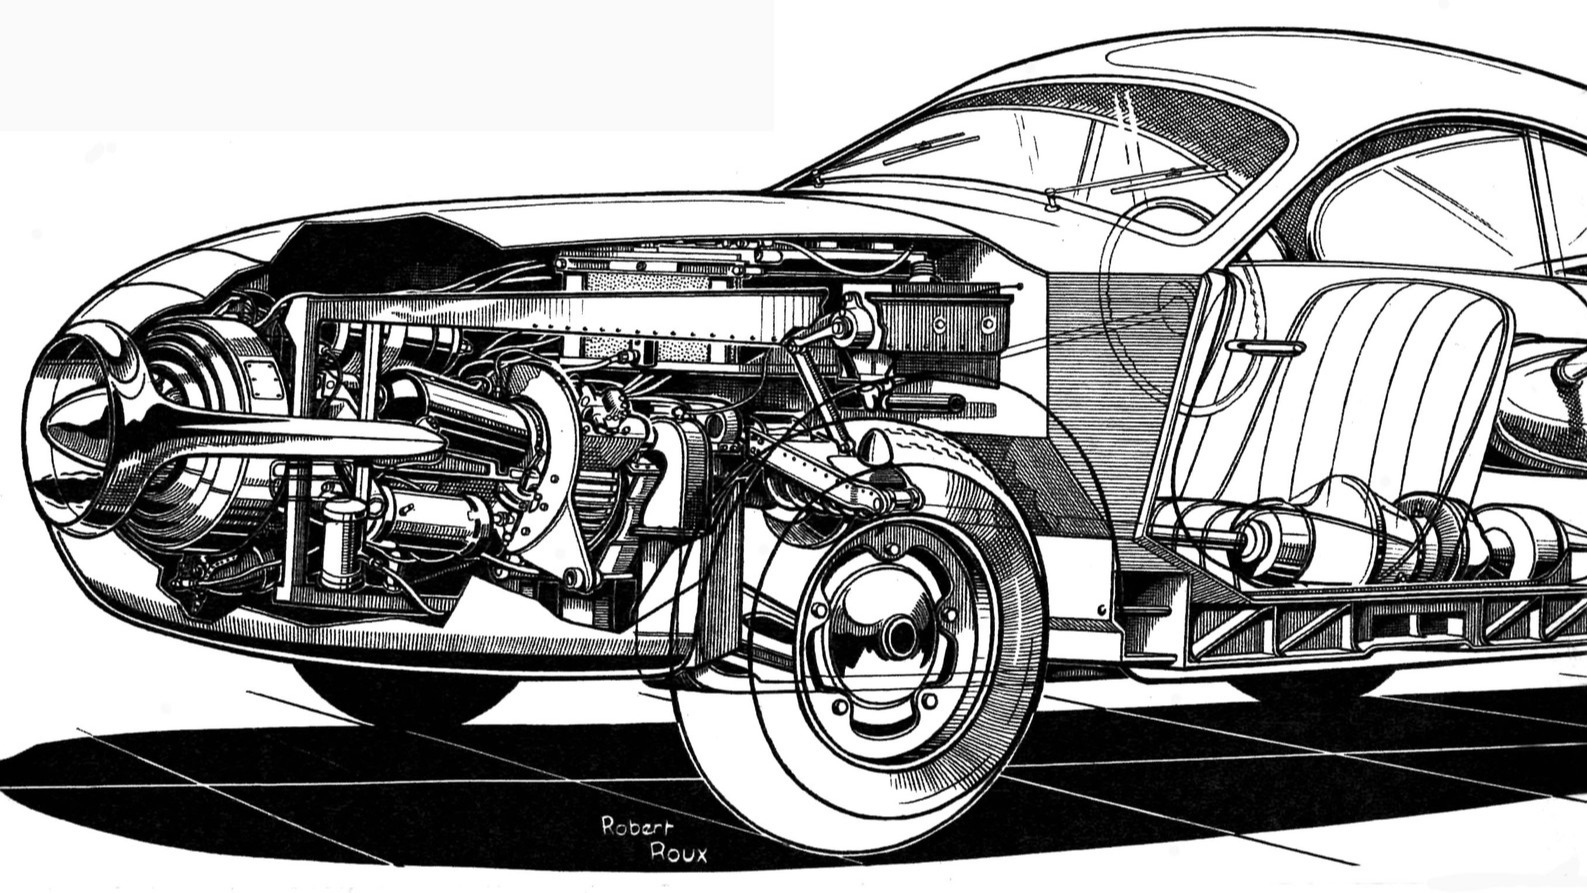 SOCEMA-Gregoire fra 1952 imponerte publikum under det årets Paris Motor Show, men prototypen med en 100-hesters gassturbin-motor var mest et PR-stunt. 